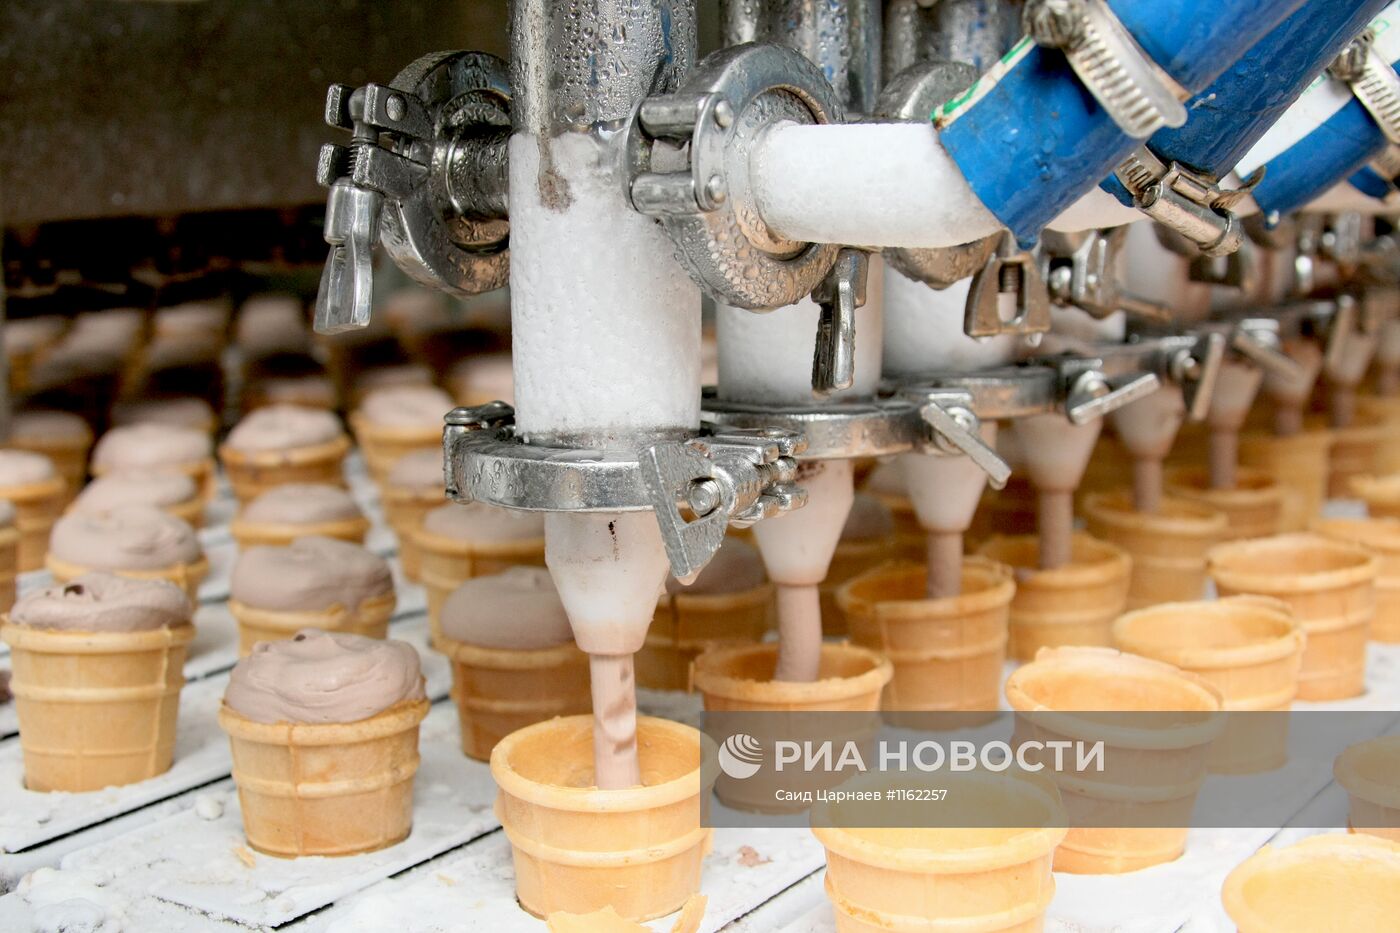 Предприятие ООО "Айсберг" по выпуску мороженого в Гудермесе